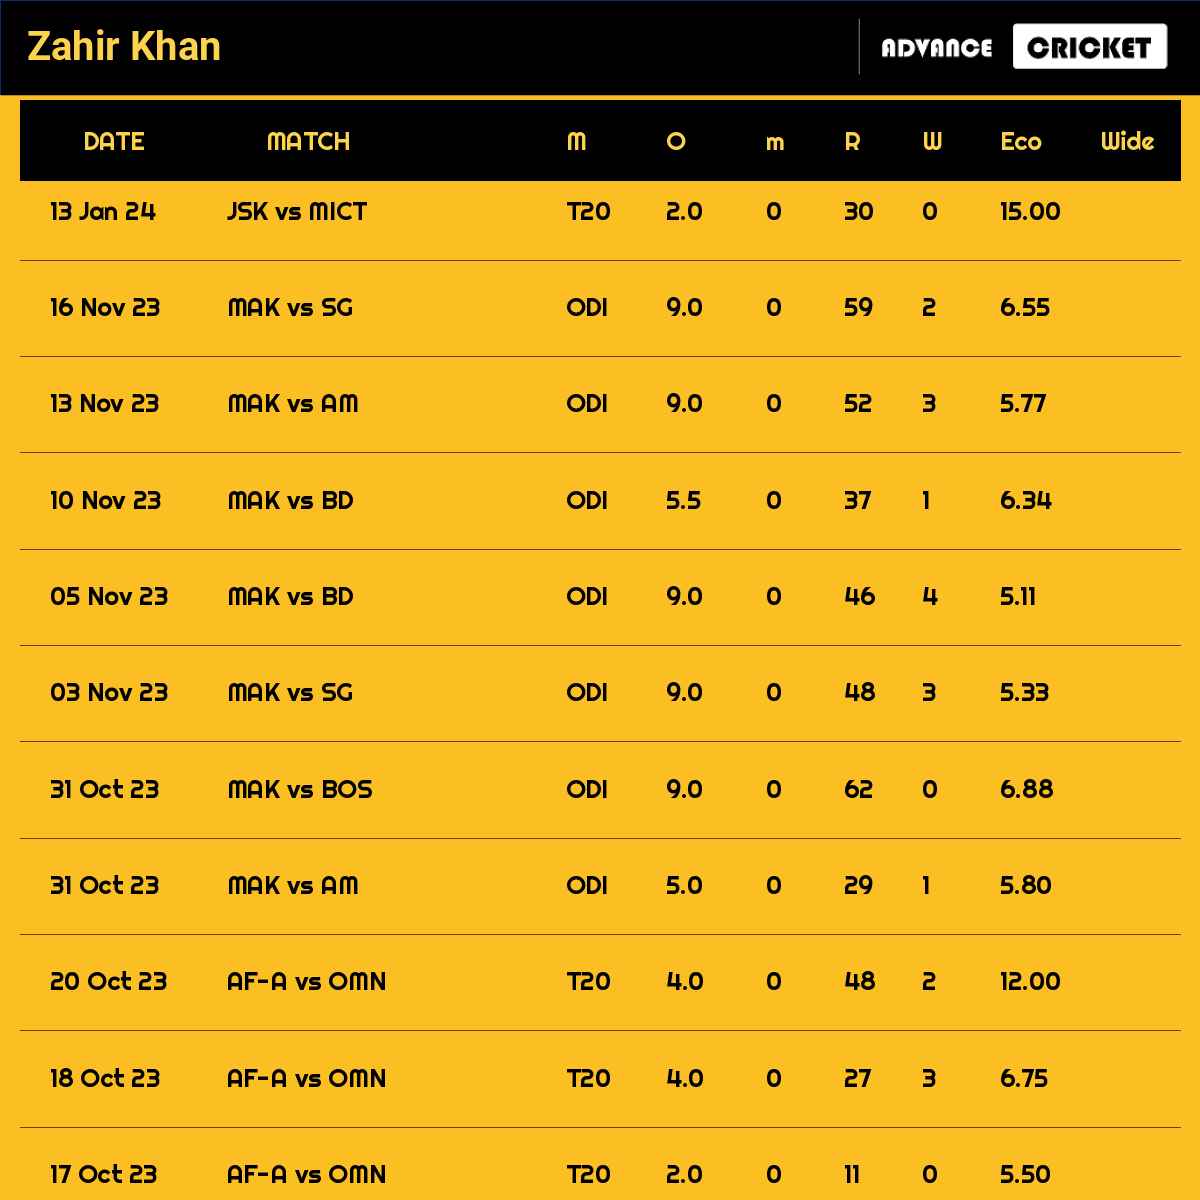 Zahir Khan recent matches